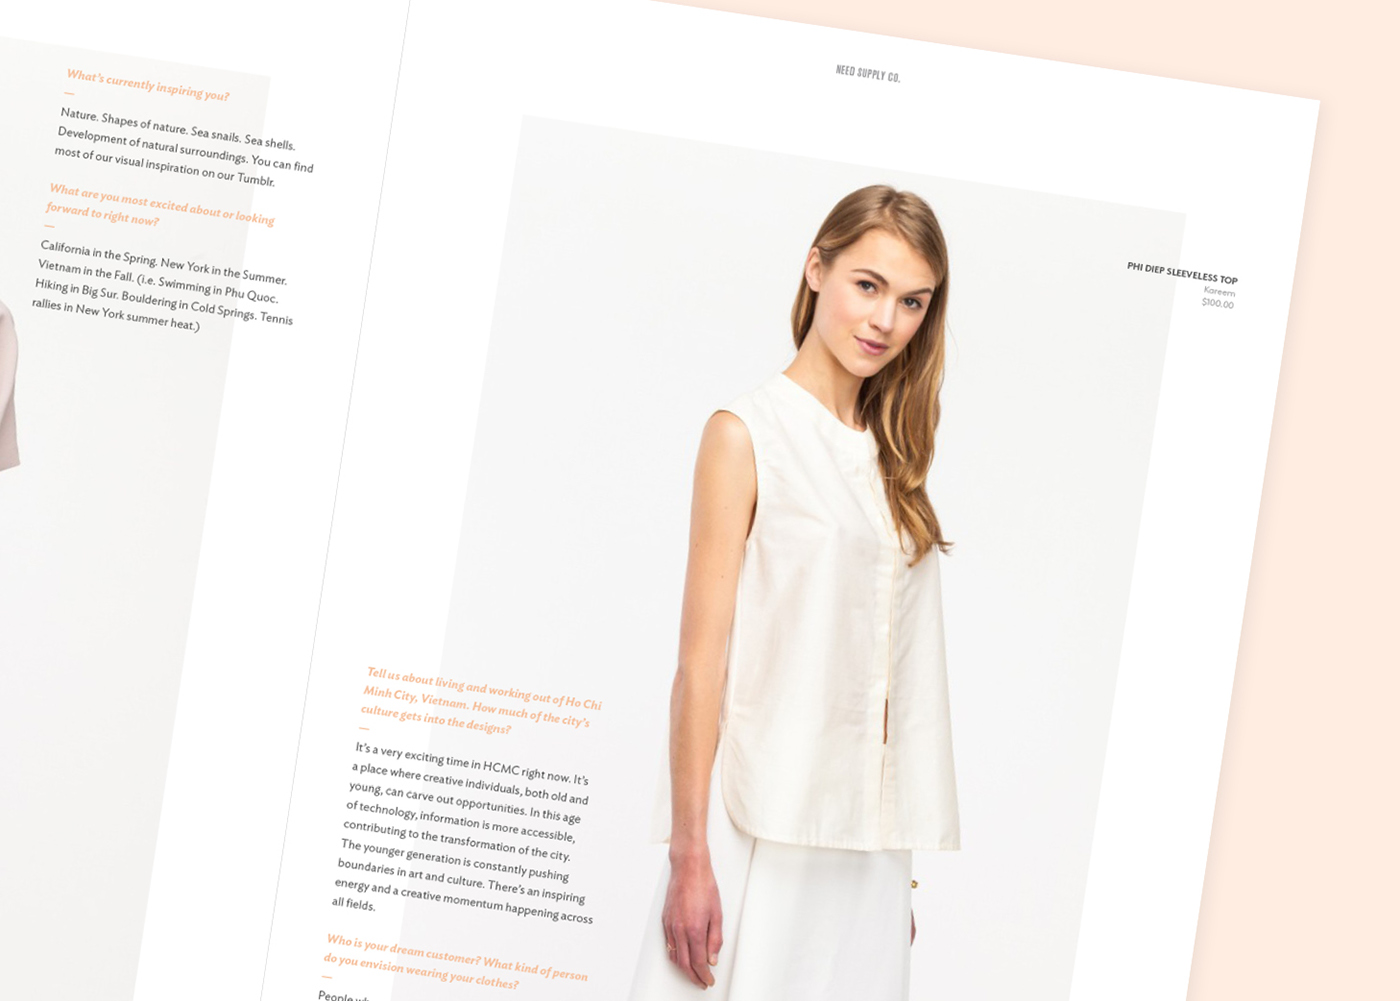 fashion editorial Retail magazine print design editorial Style minimal